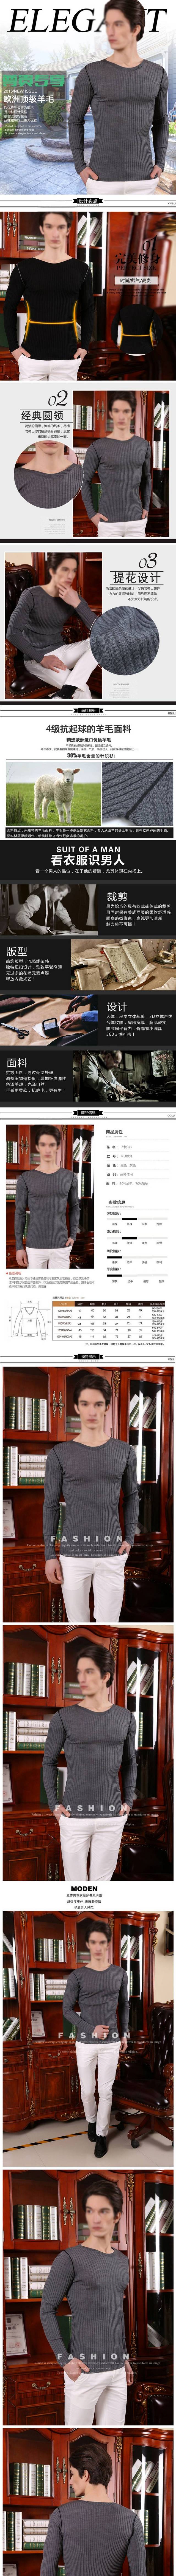 冬季男款羊毛衫宝贝产品描述细节详情页